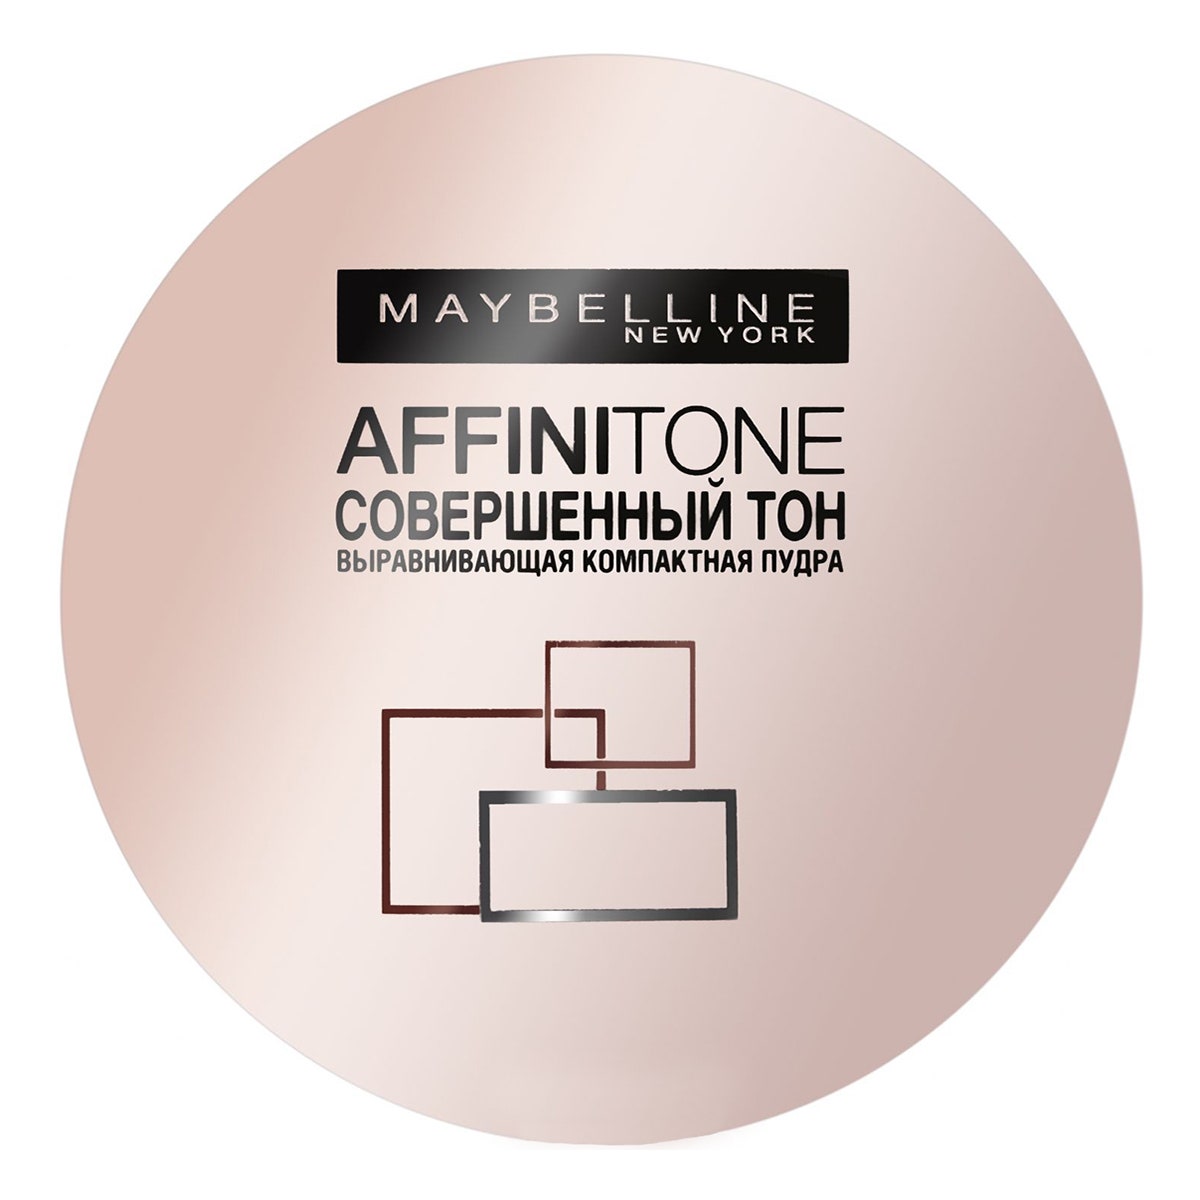 Недорогие хорошие компактные пудры от Rimmel Vivienne Sabo Maybelline NY Max Factor | Allure